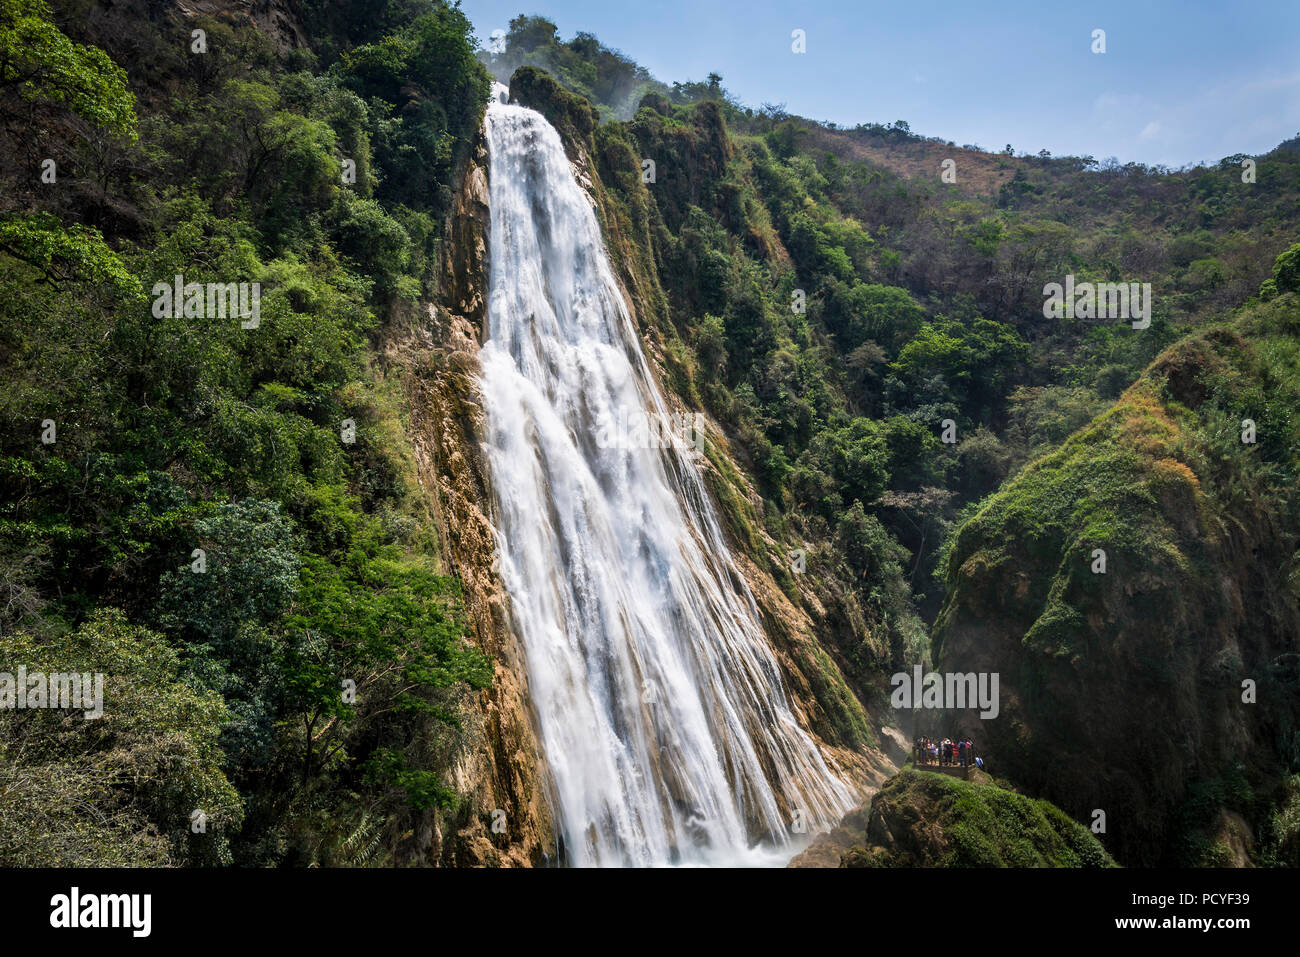 https://c8.alamy.com/comp/PCYF39/chiflon-waterfall-cascada-velo-de-novia-chiapas-mexico-PCYF39.jpg